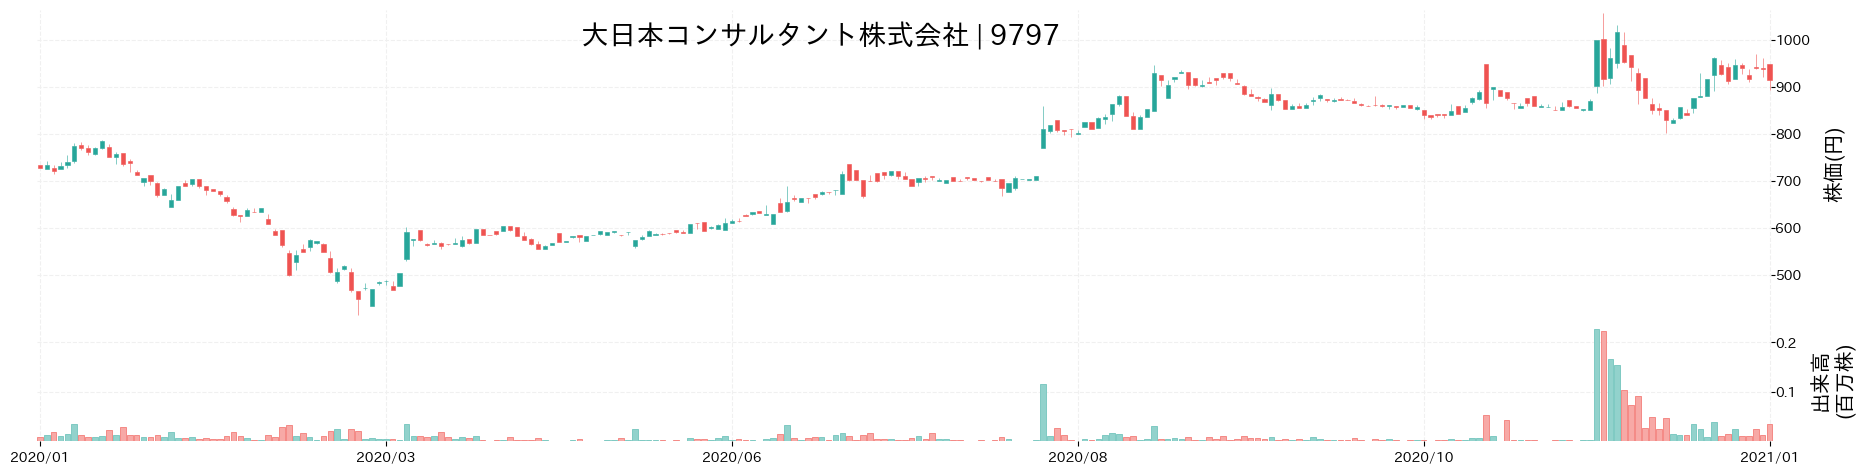 大日本コンサルタントの株価推移(2020)